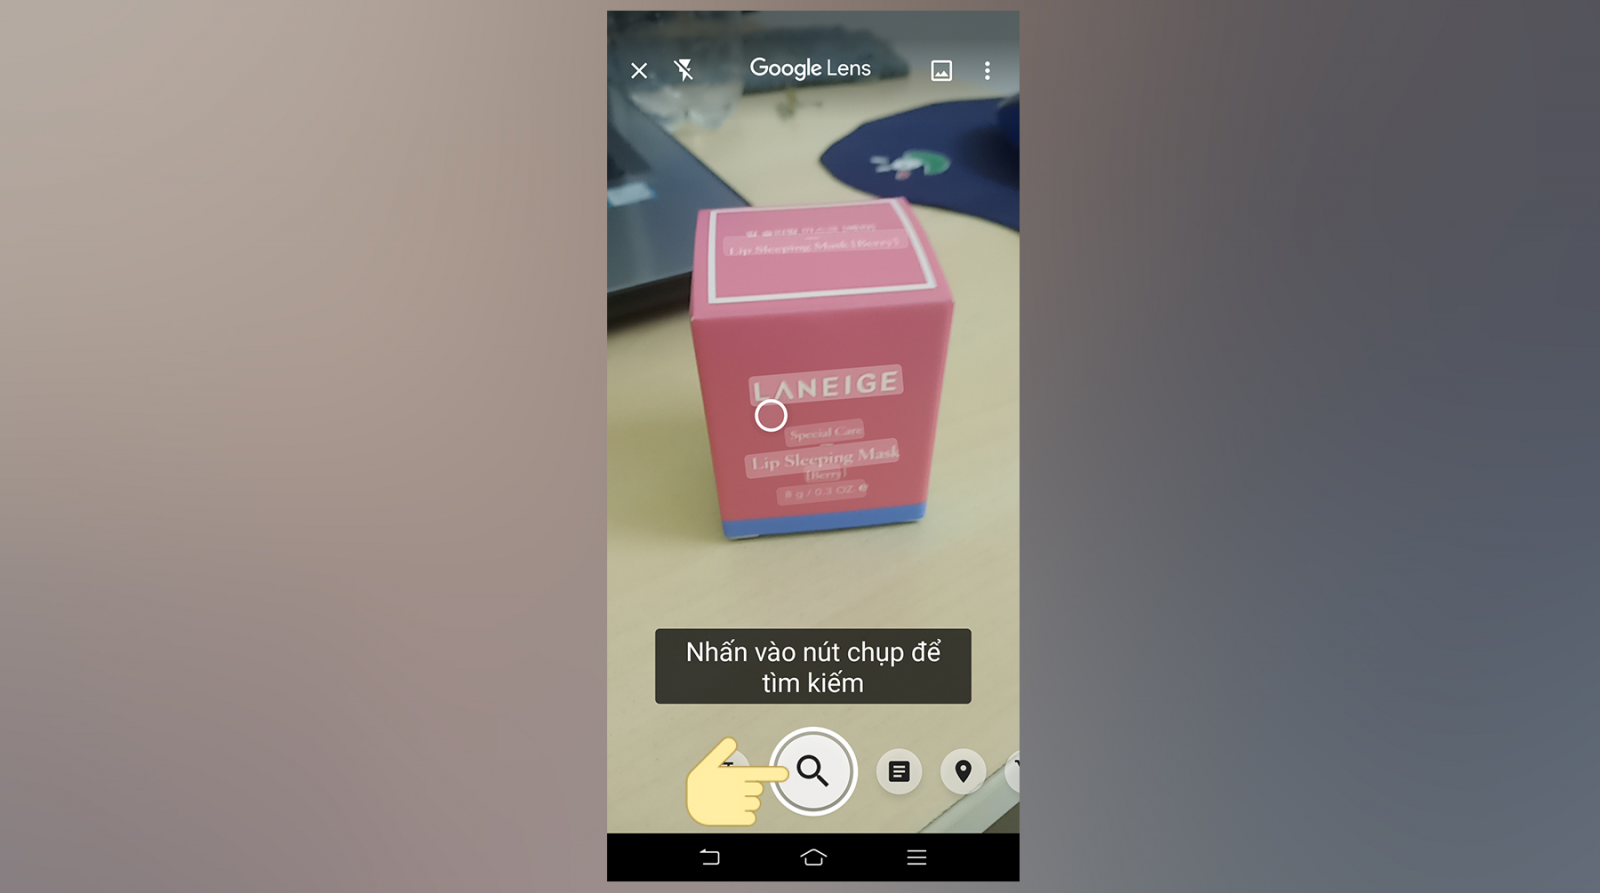 Google Ống Kính là một trong khí cụ giúp đỡ bạn thám thính kiếm vấn đề hình hình ảnh nhanh gọn lẹ bên trên điện thoại cảm ứng thông minh Android